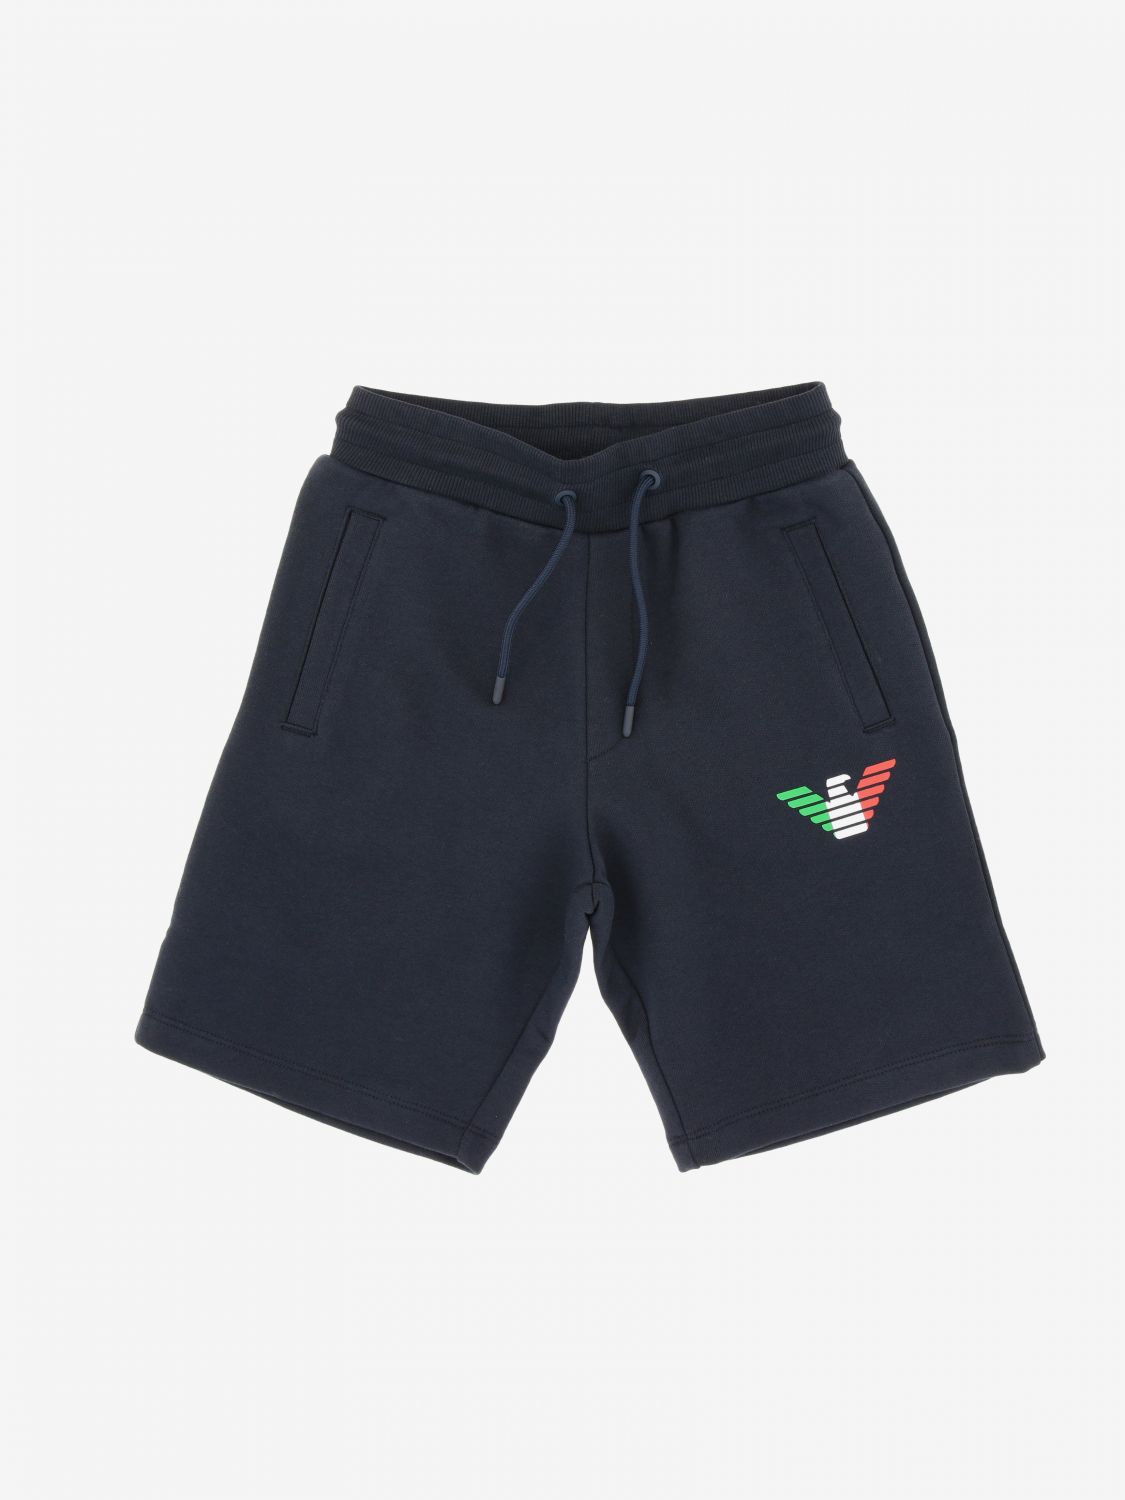 Emporio Armani jogging shorts with logo 